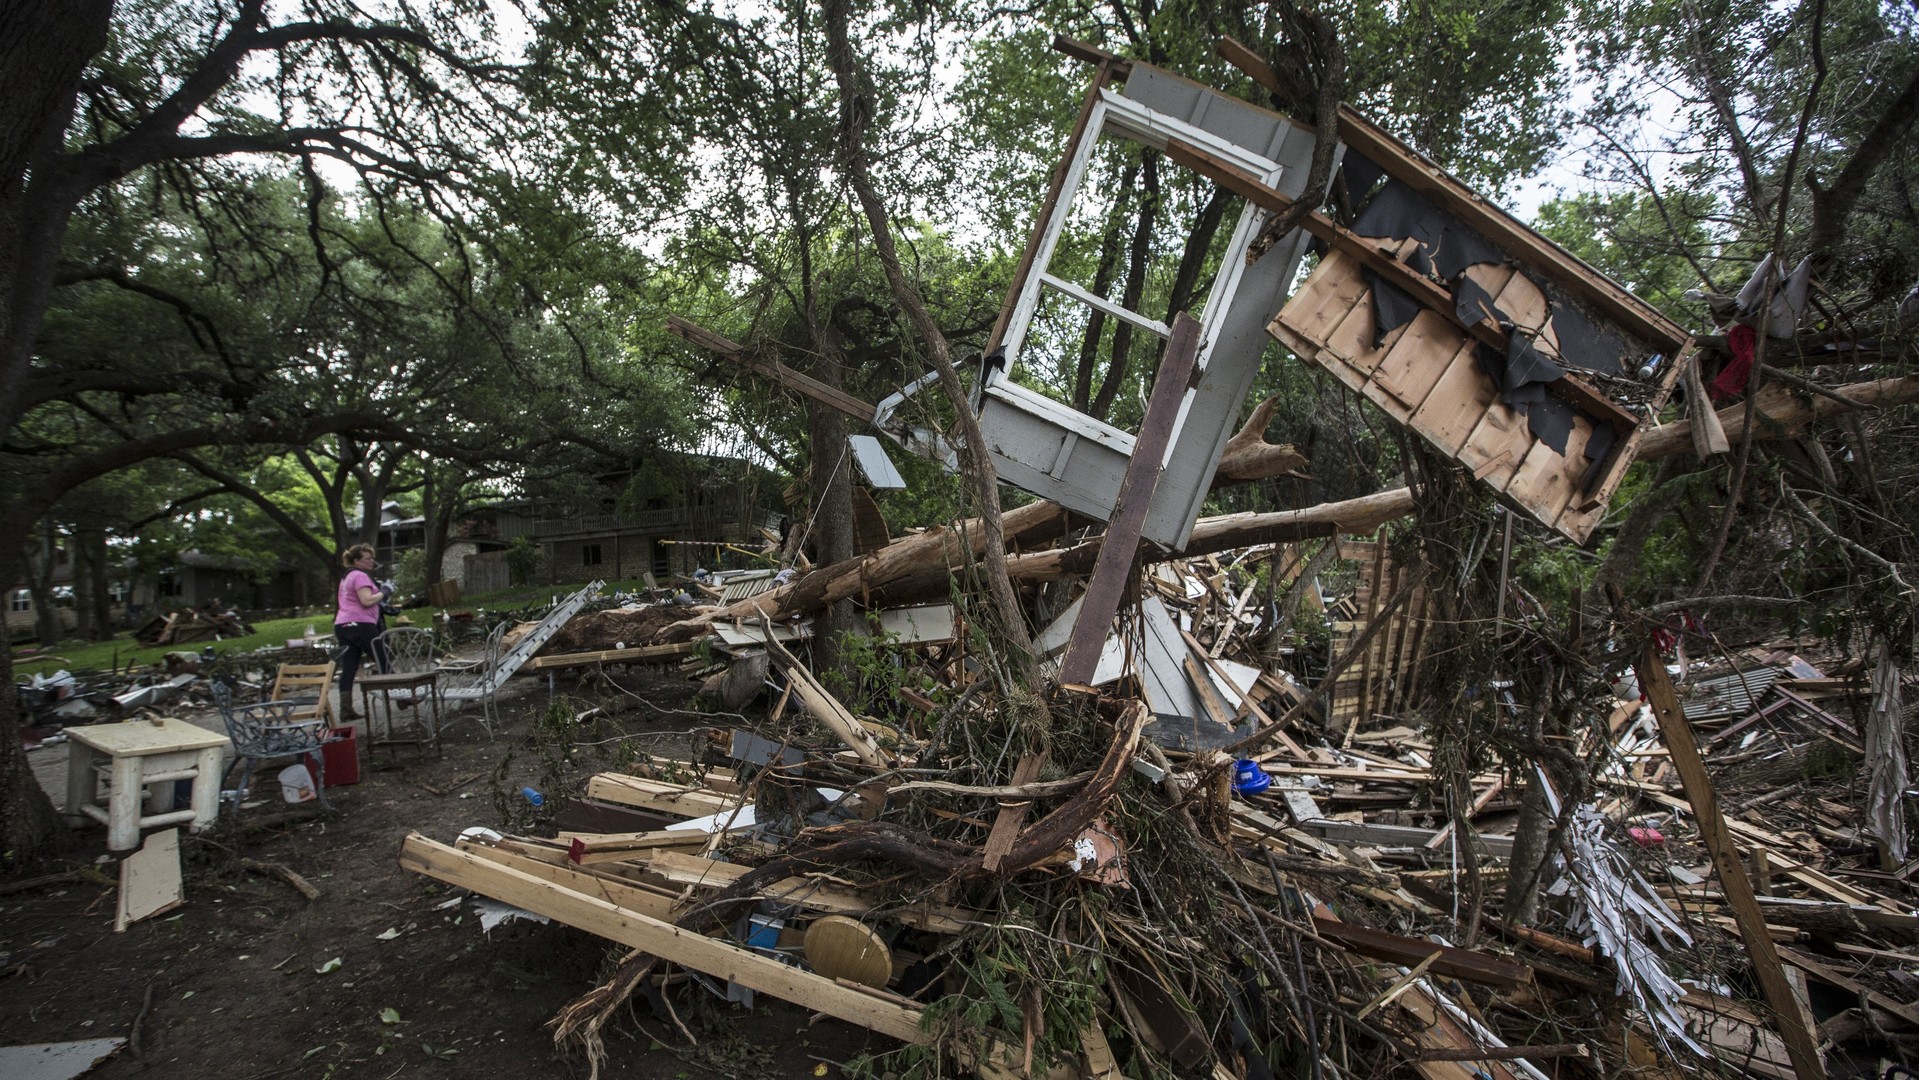  Les débris d’une maison après les inondations meurtrières au Texas